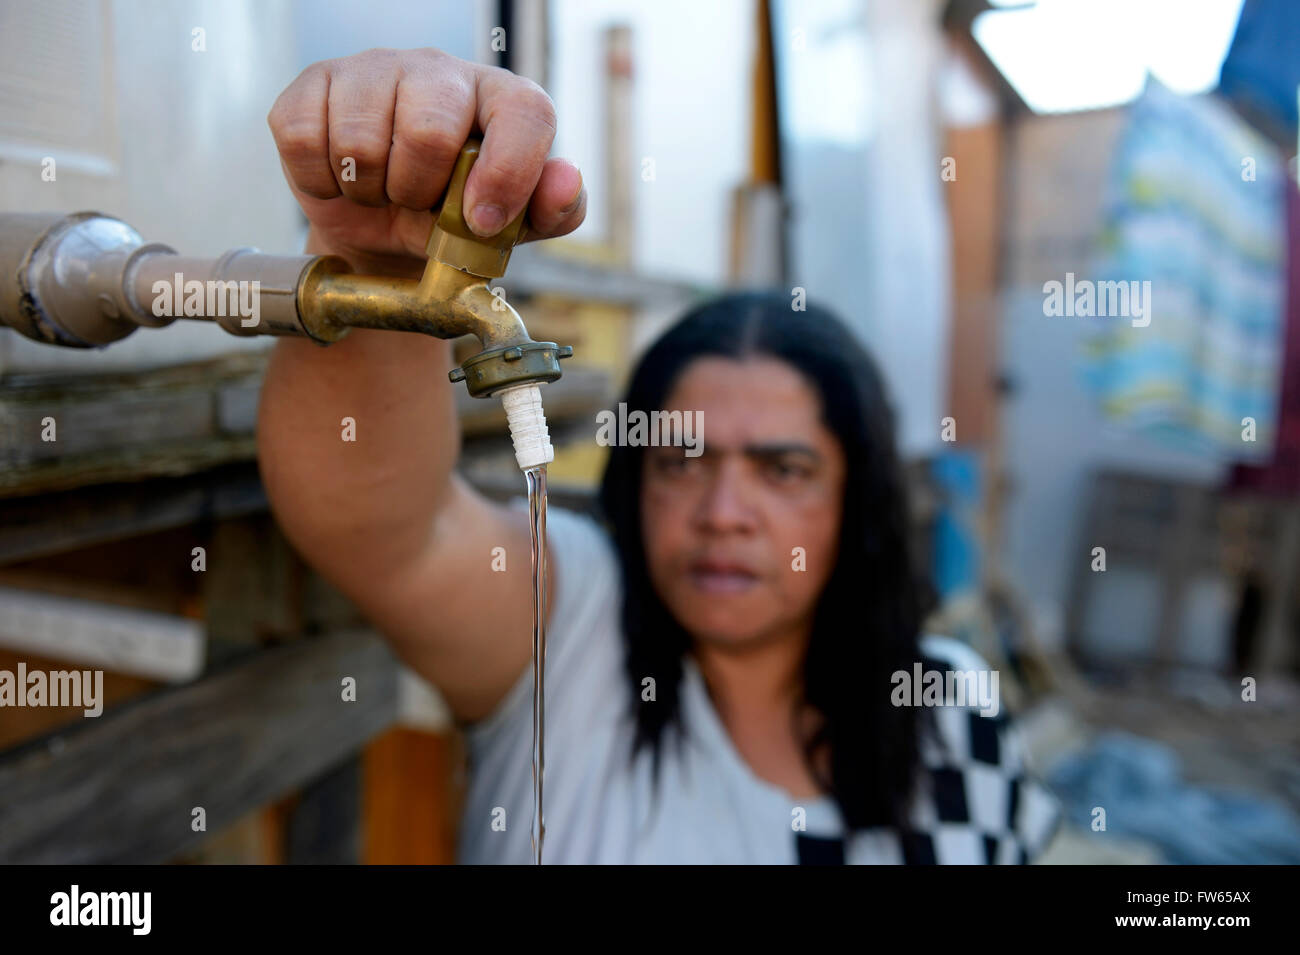 Mujer abriendo el grifo del depósito de agua utilizados conjuntamente, los barrios de favelas 21 de abril, la ciudad de São Paulo, Brasil Foto de stock